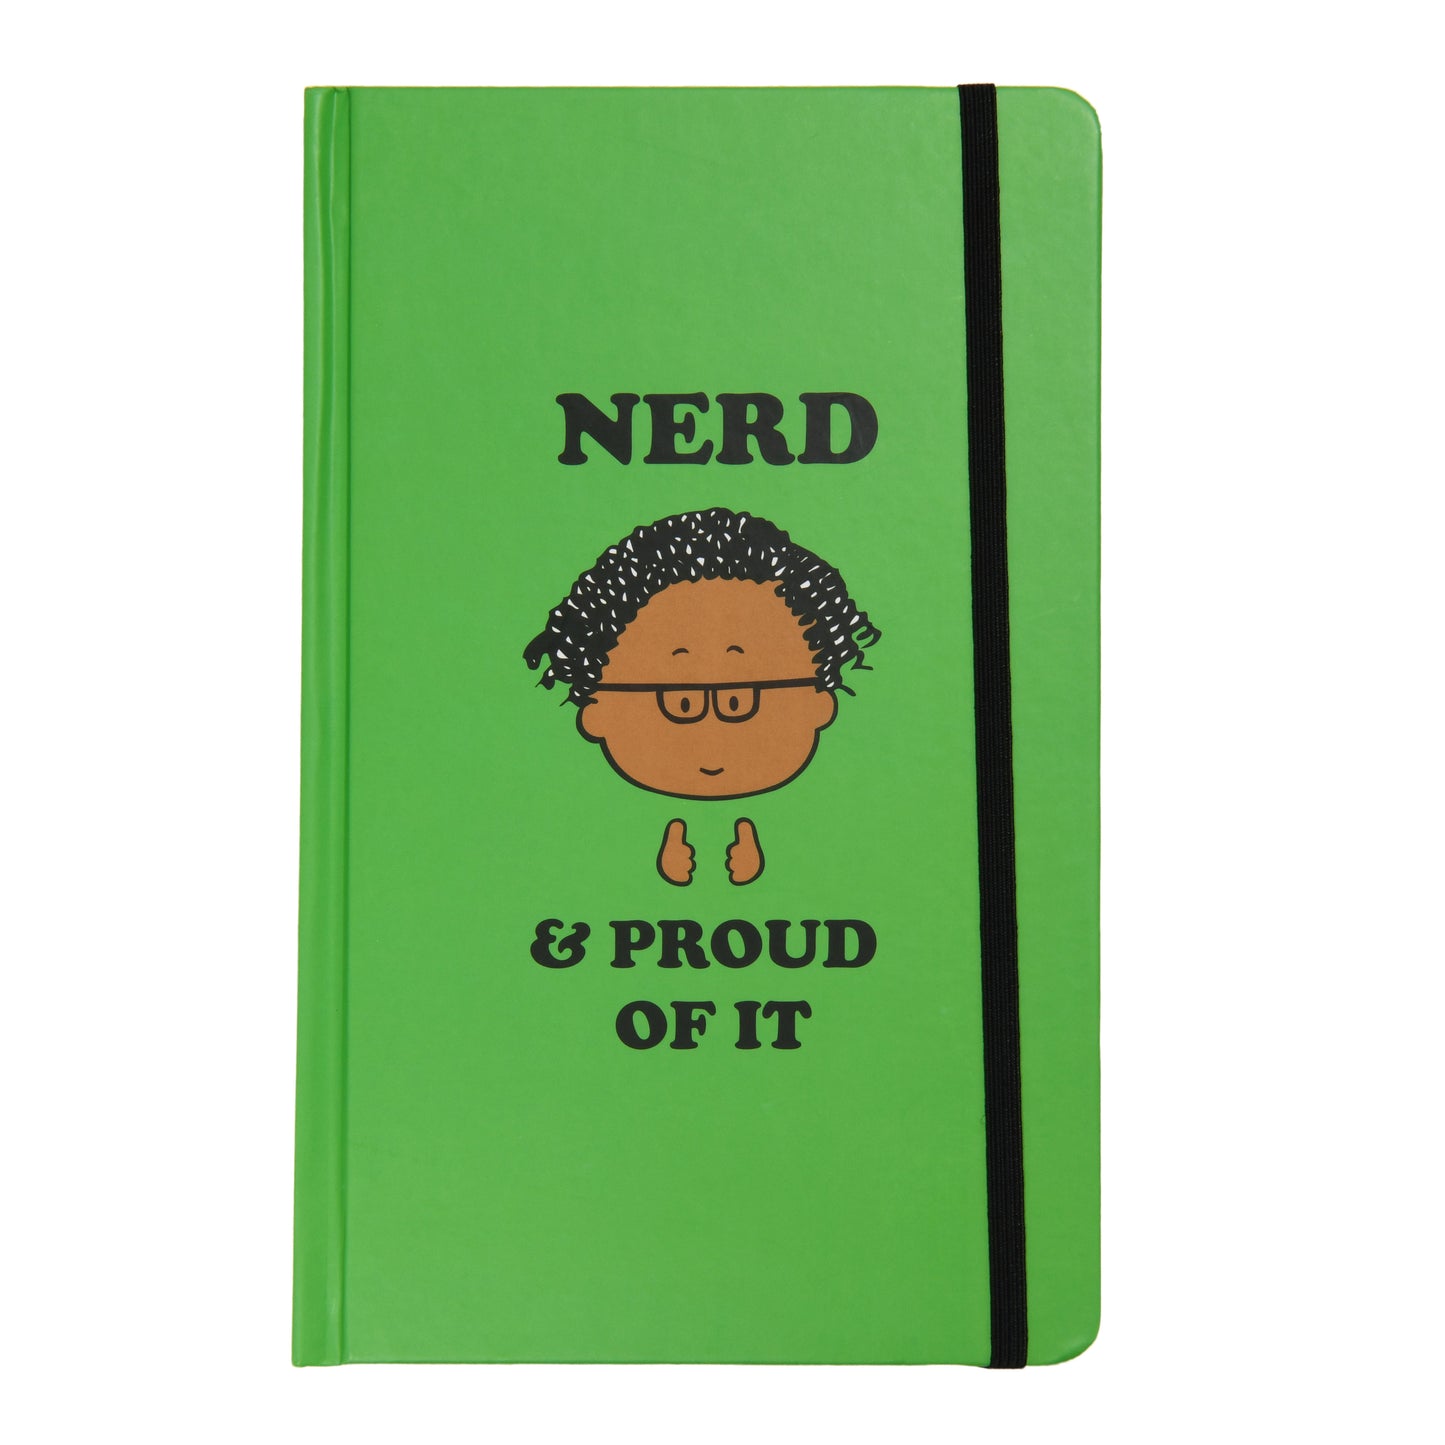 "Nerd & Proud of it" Lined Blank Journal